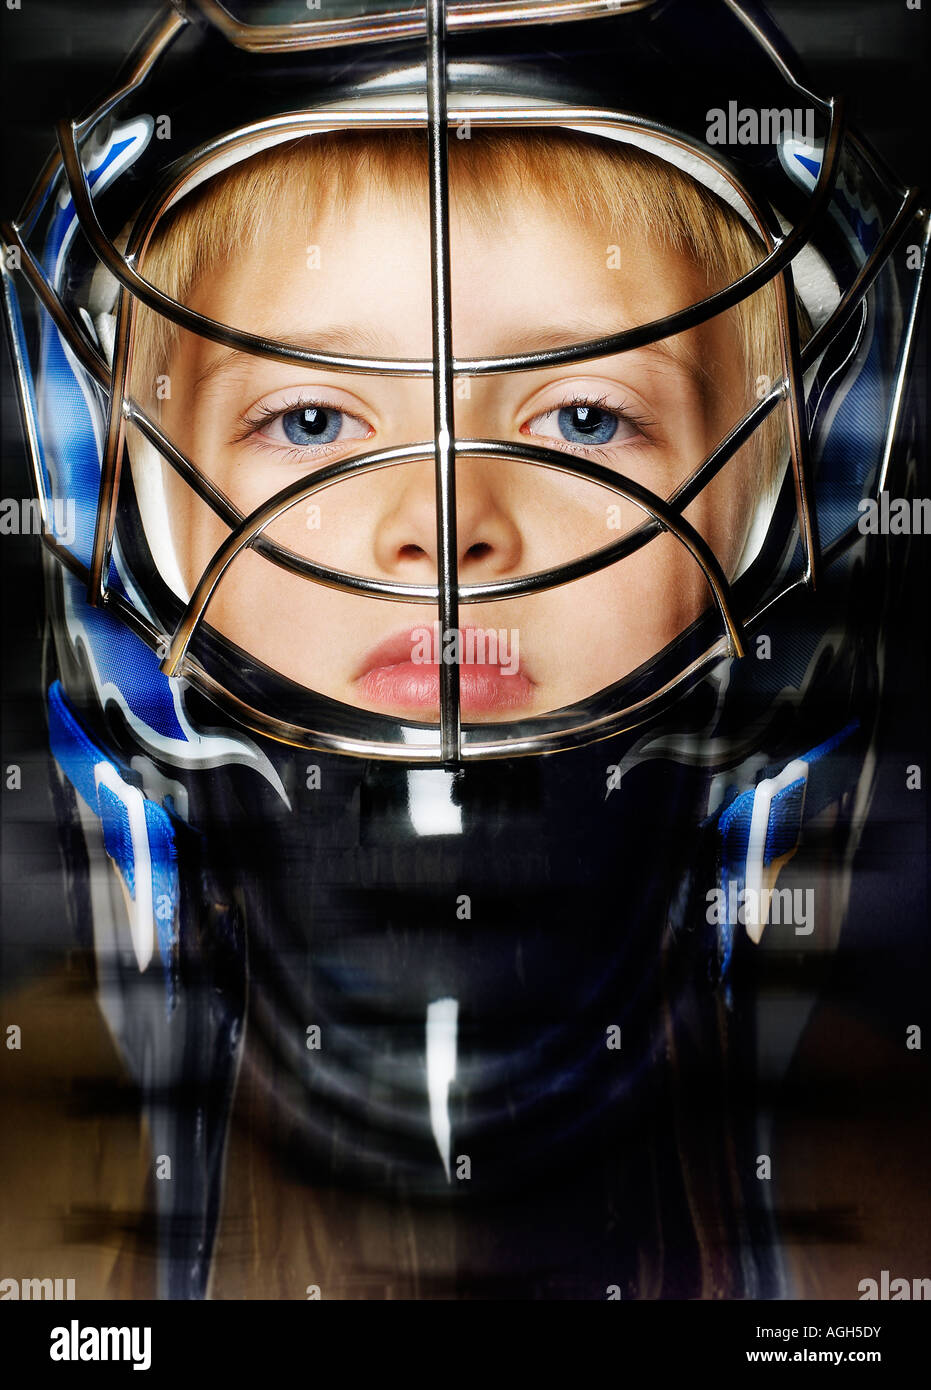 Image de garçon avec casque de protection sur la tête Banque D'Images